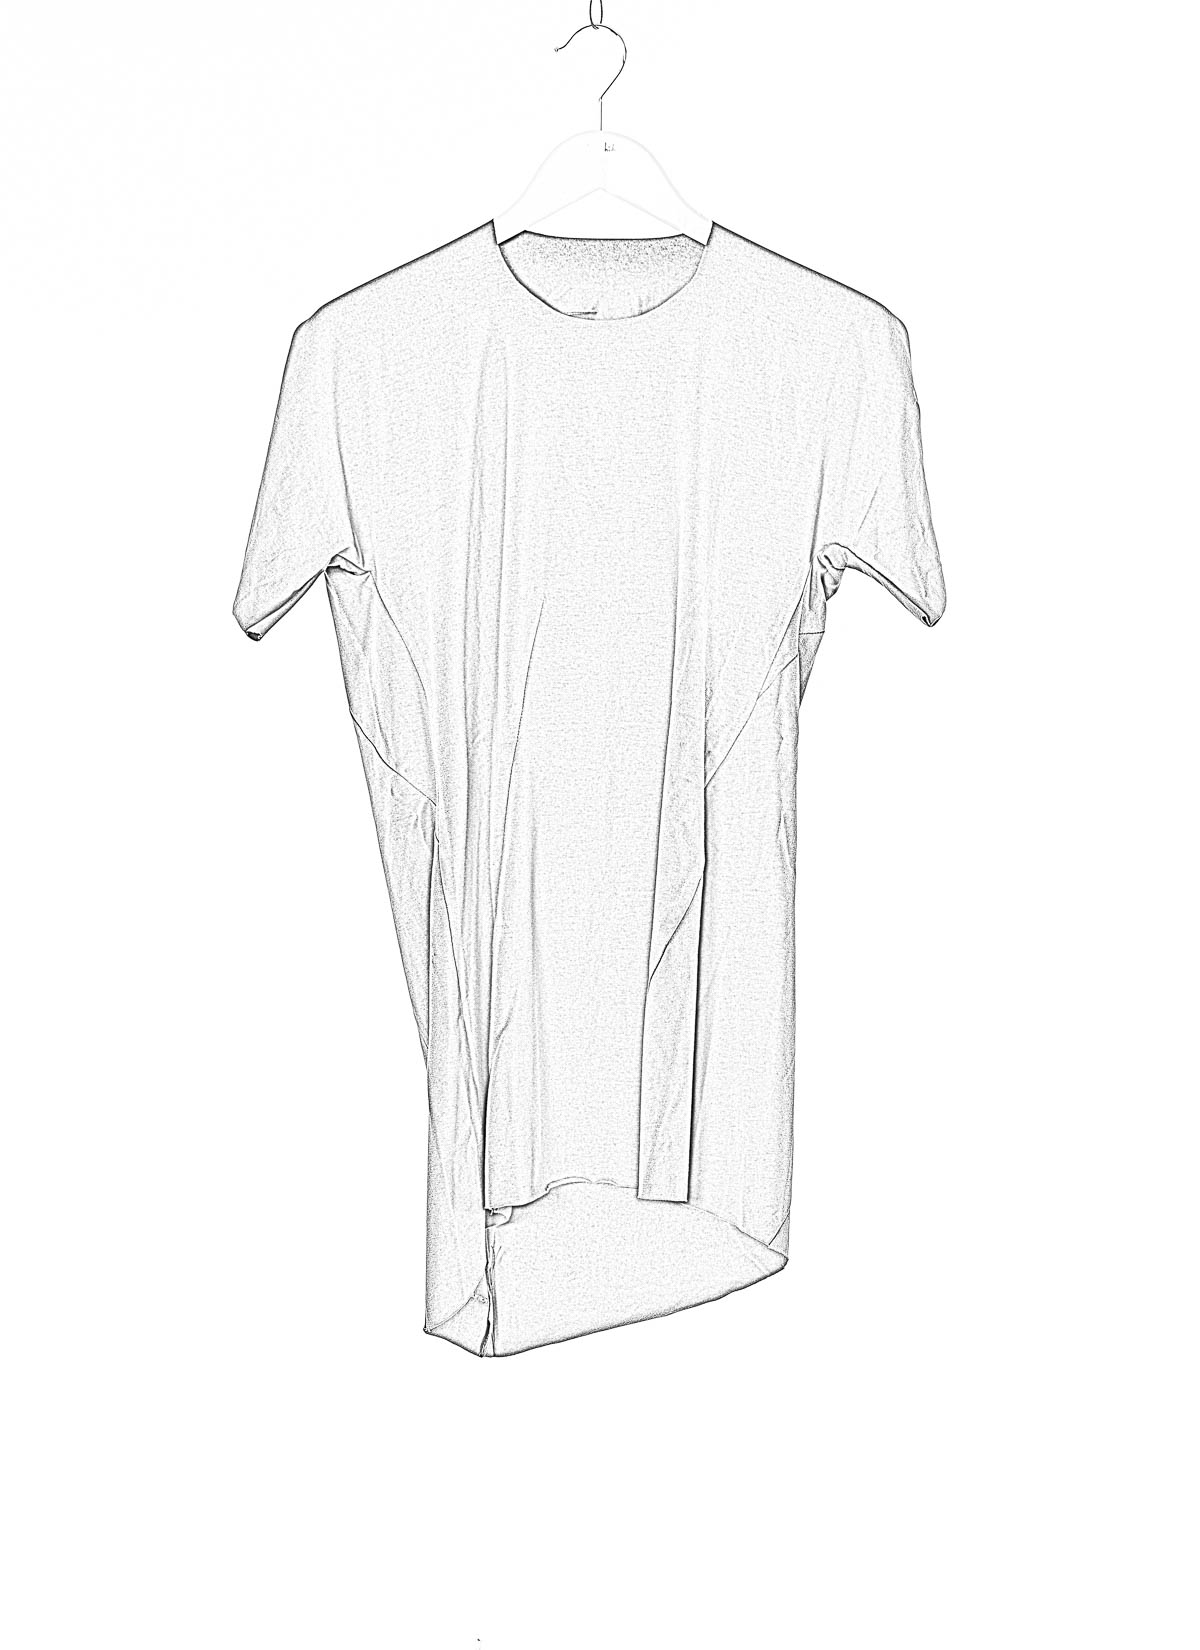 hide-m | LEON EMANUEL BLANCK Distortion GS T-Shirt, grey cotton/ea